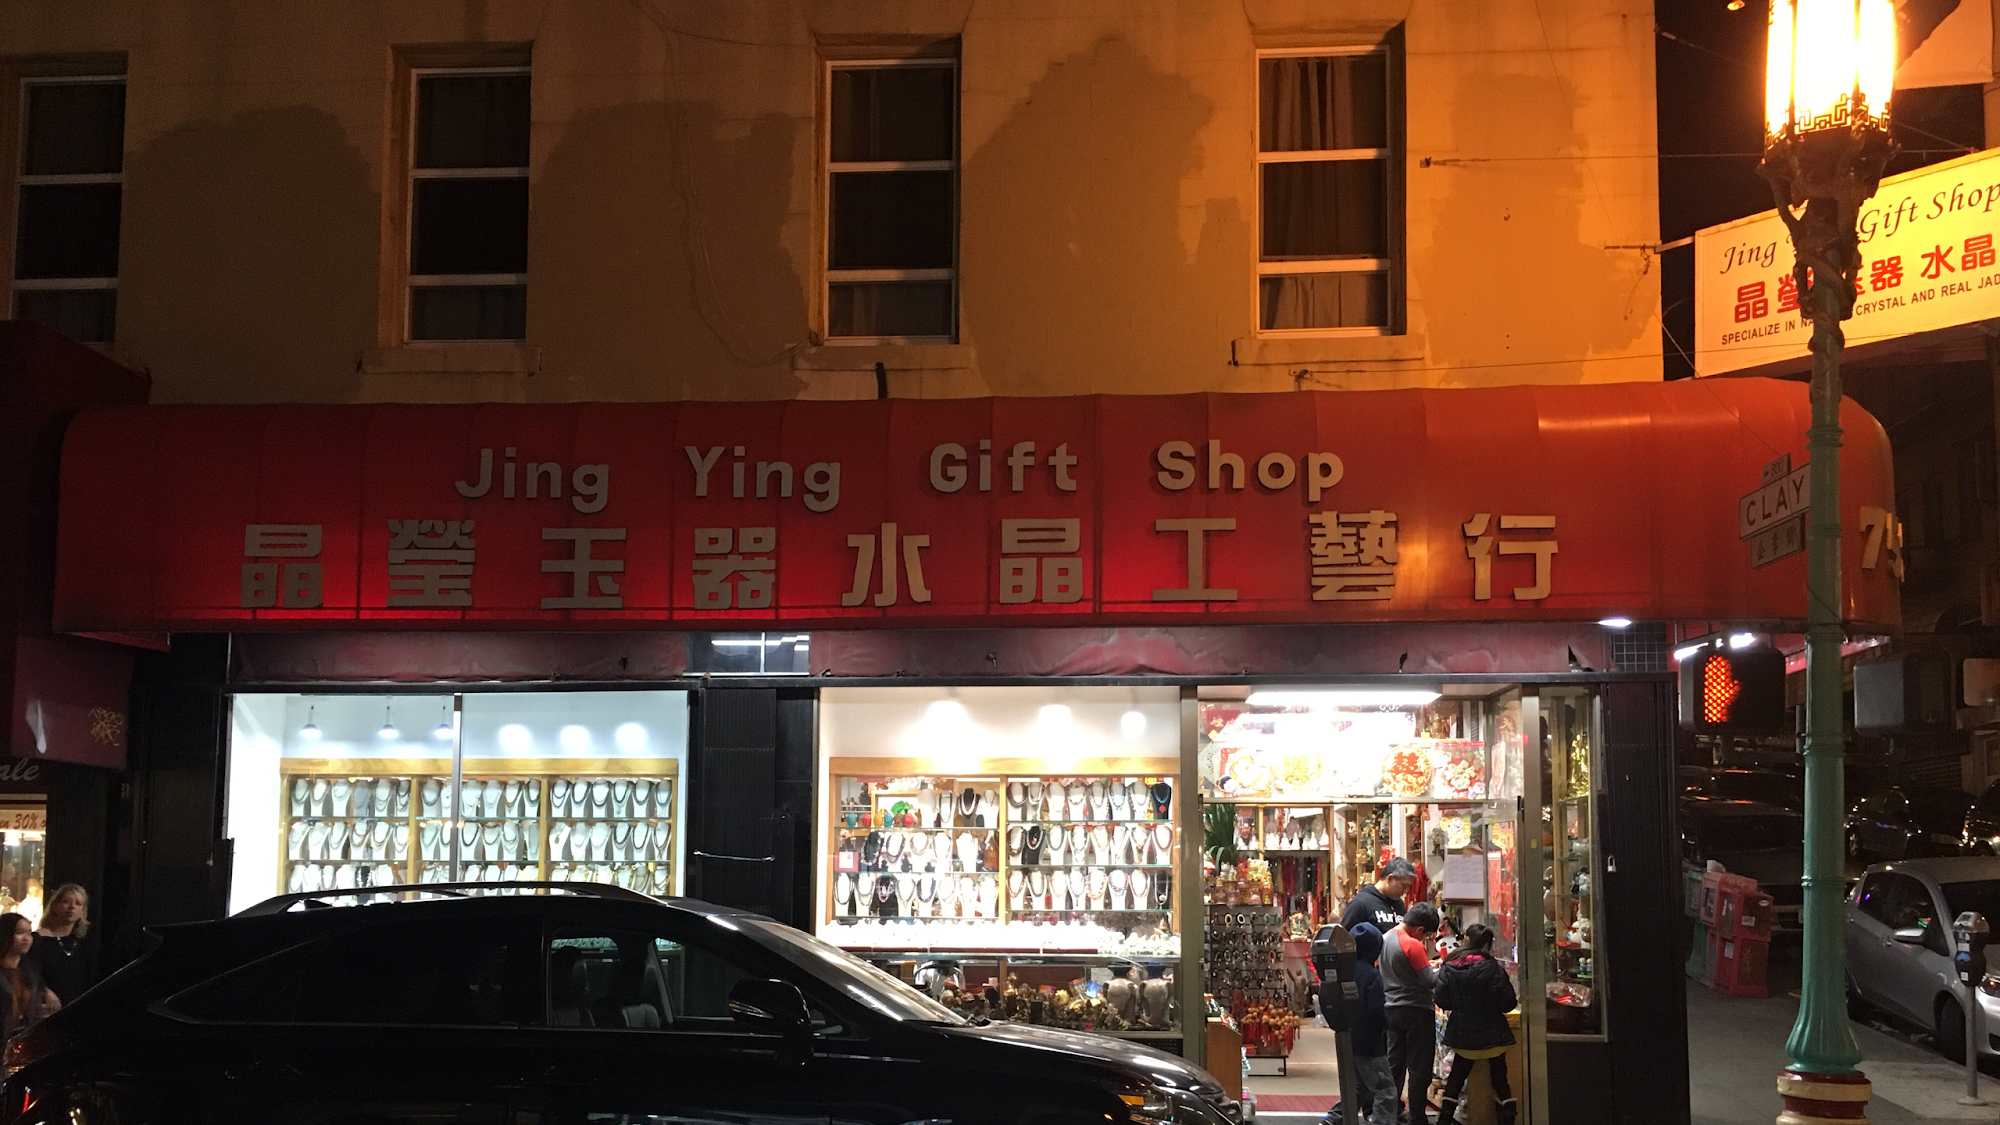 Jing Ying Gift Shop inc